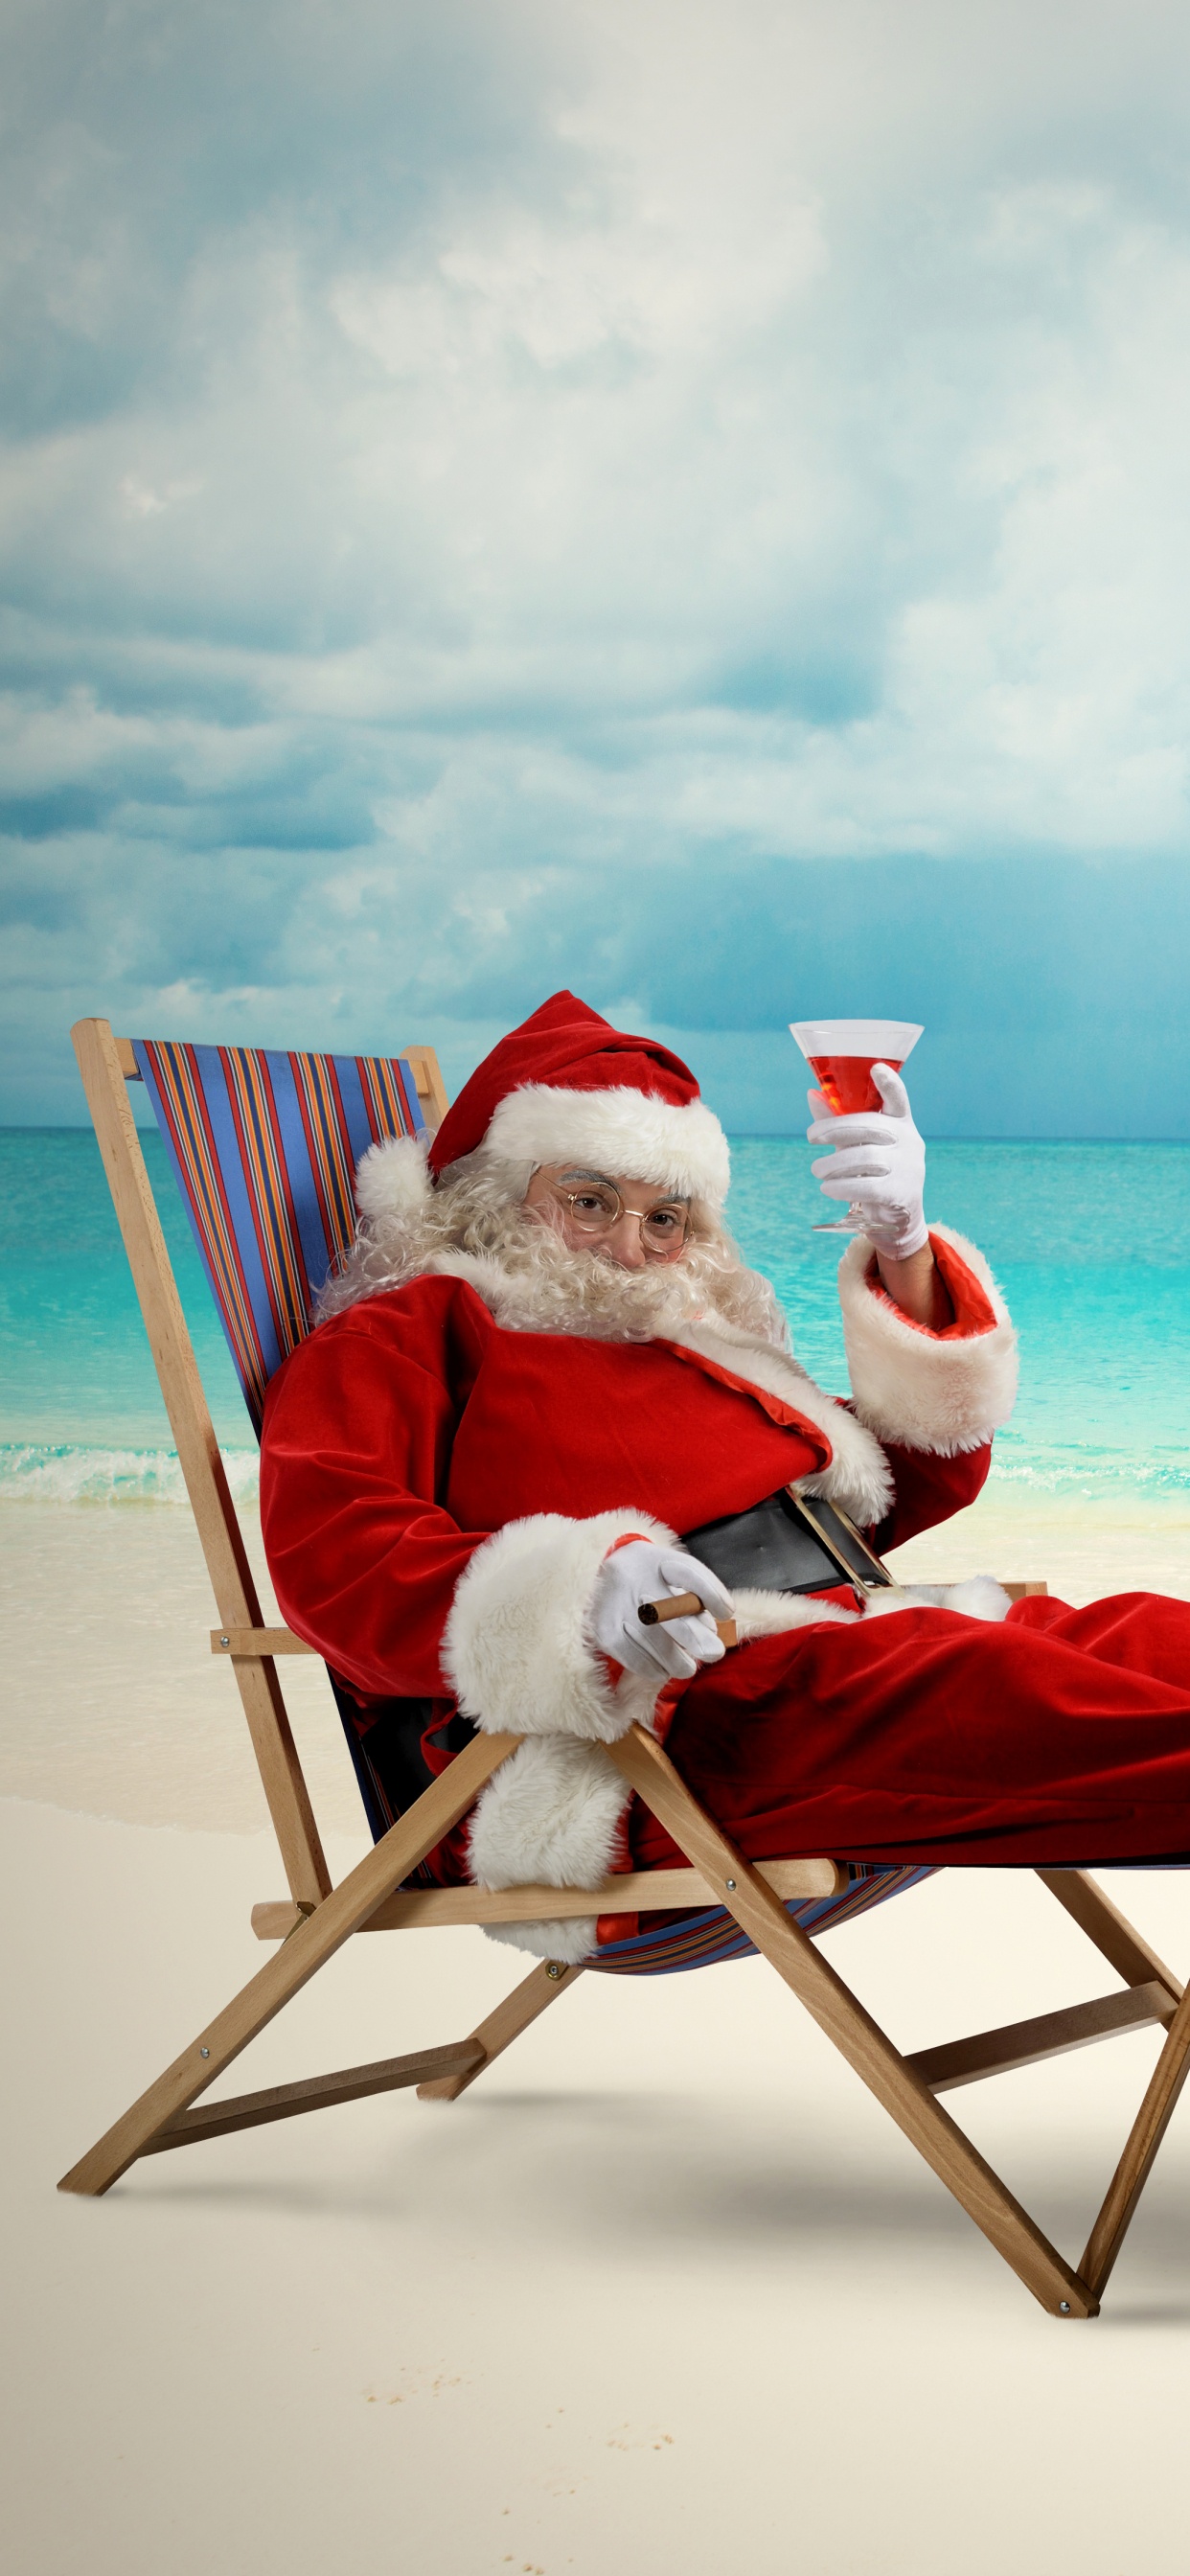 Weihnachtsmann, Weihnachten, Strand, Meer, Urlaub. Wallpaper in 1242x2688 Resolution